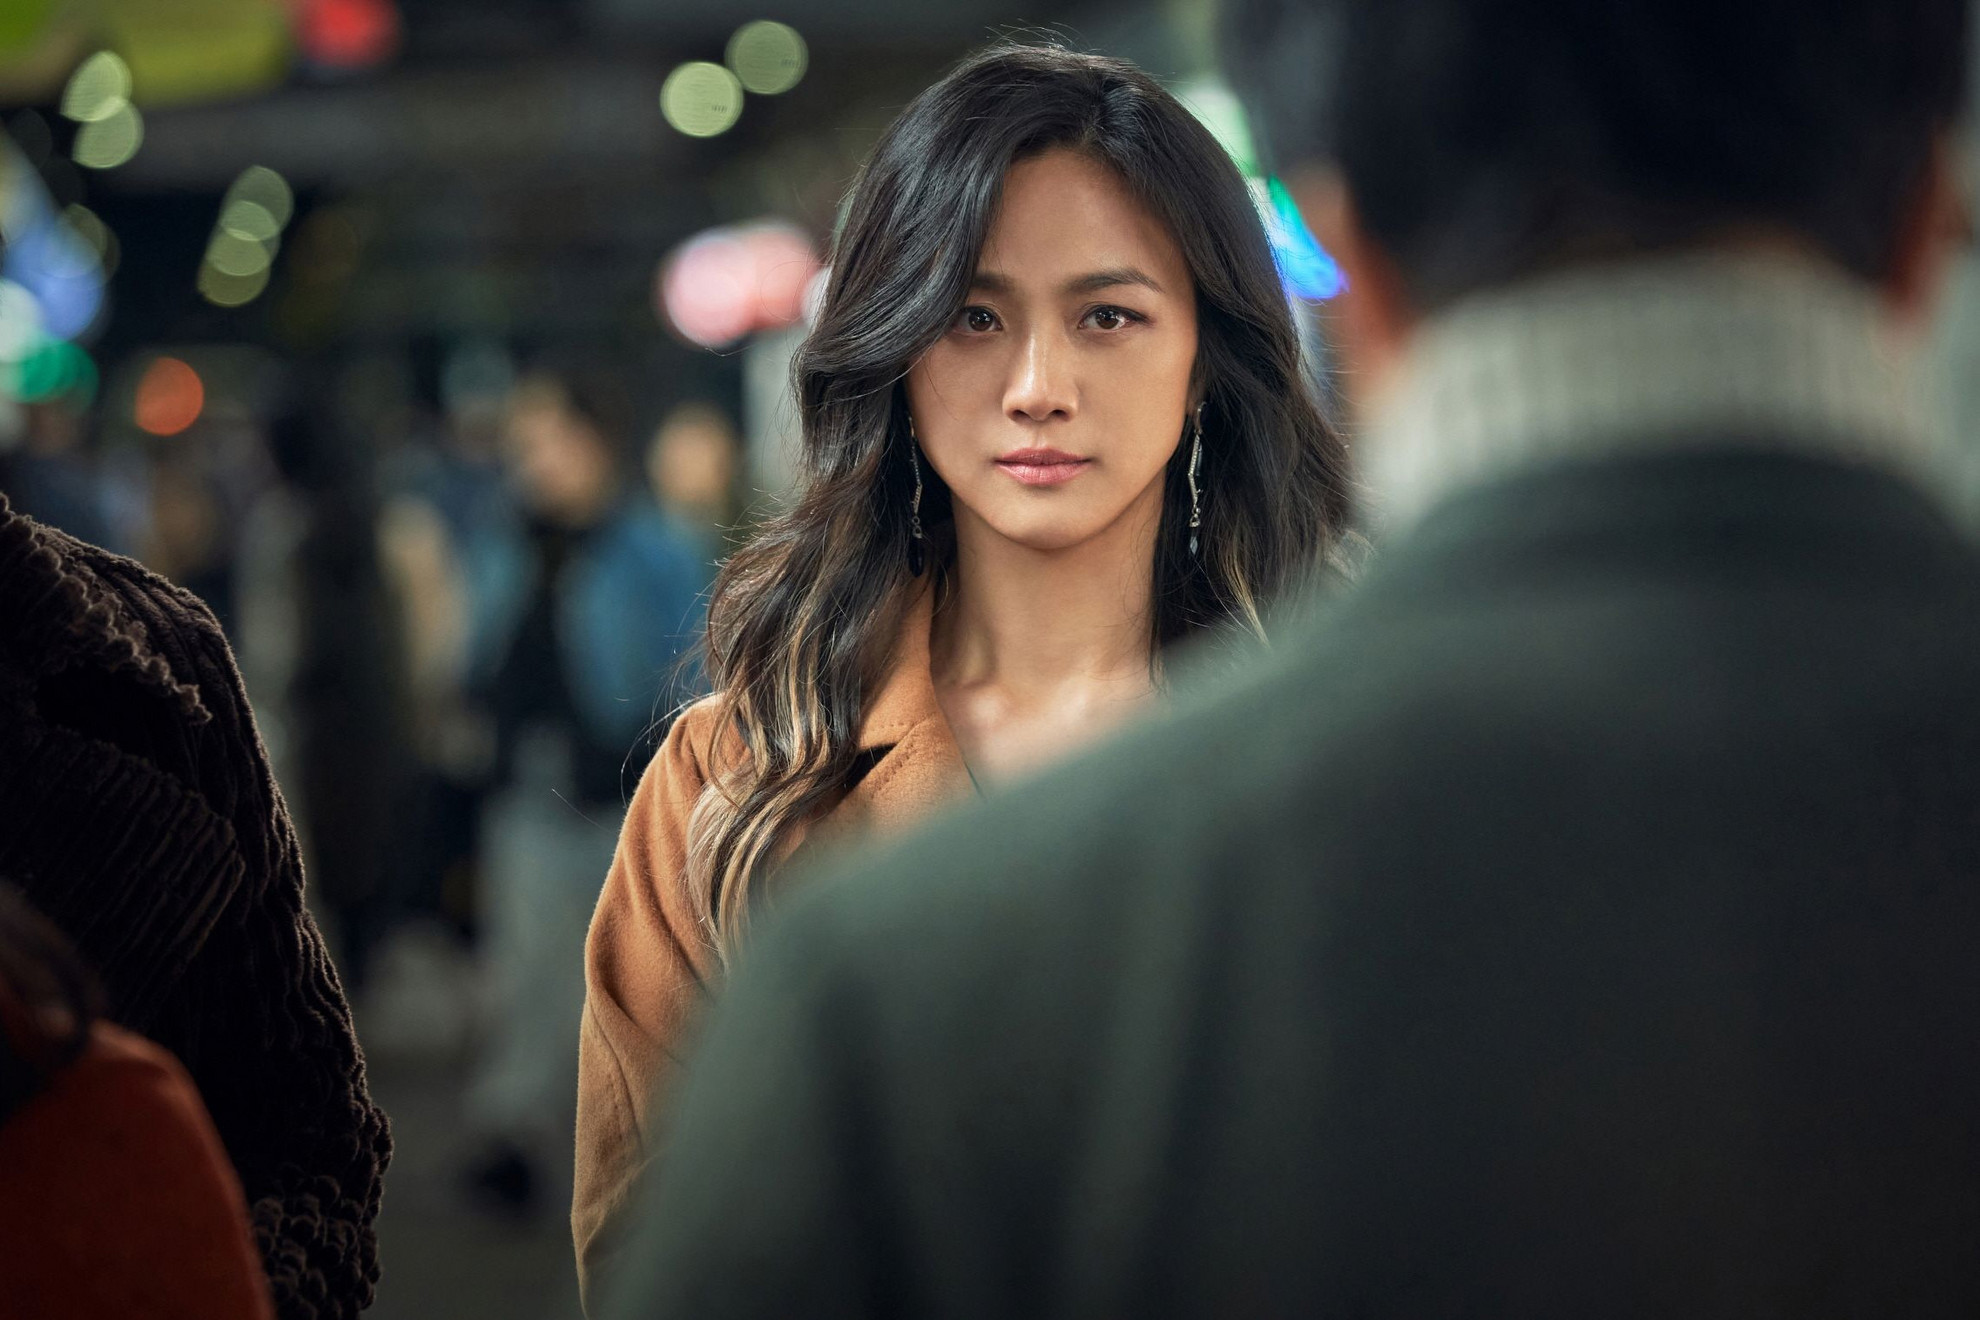 Egy sehova nem vezető szerelem lírai és felemelő krónikája Park Chan-wook mostani filmje